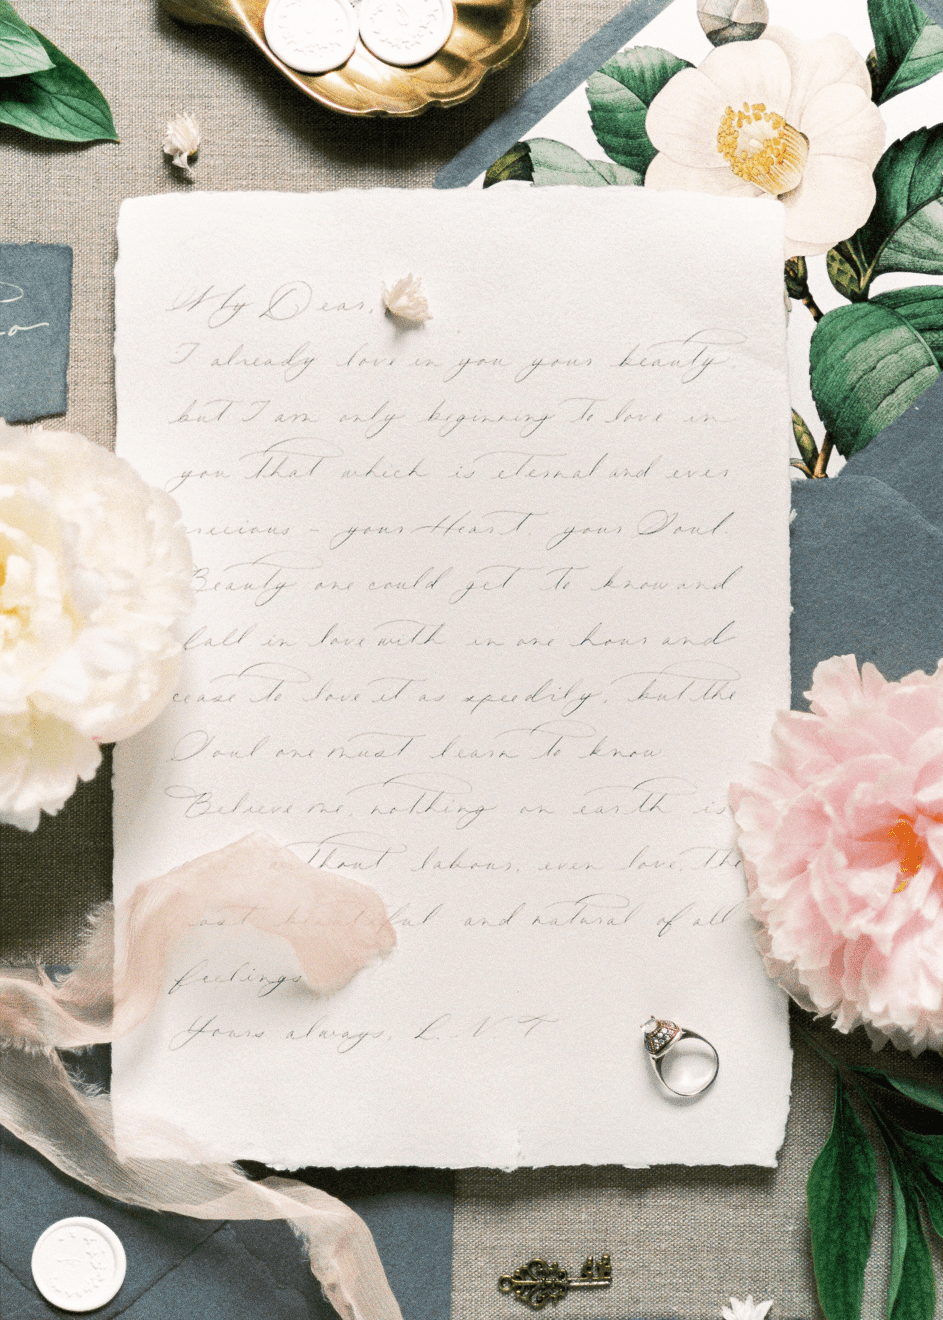 Frau Greif hinterließ einen Brief und einen Ring. | Quelle: Pexels